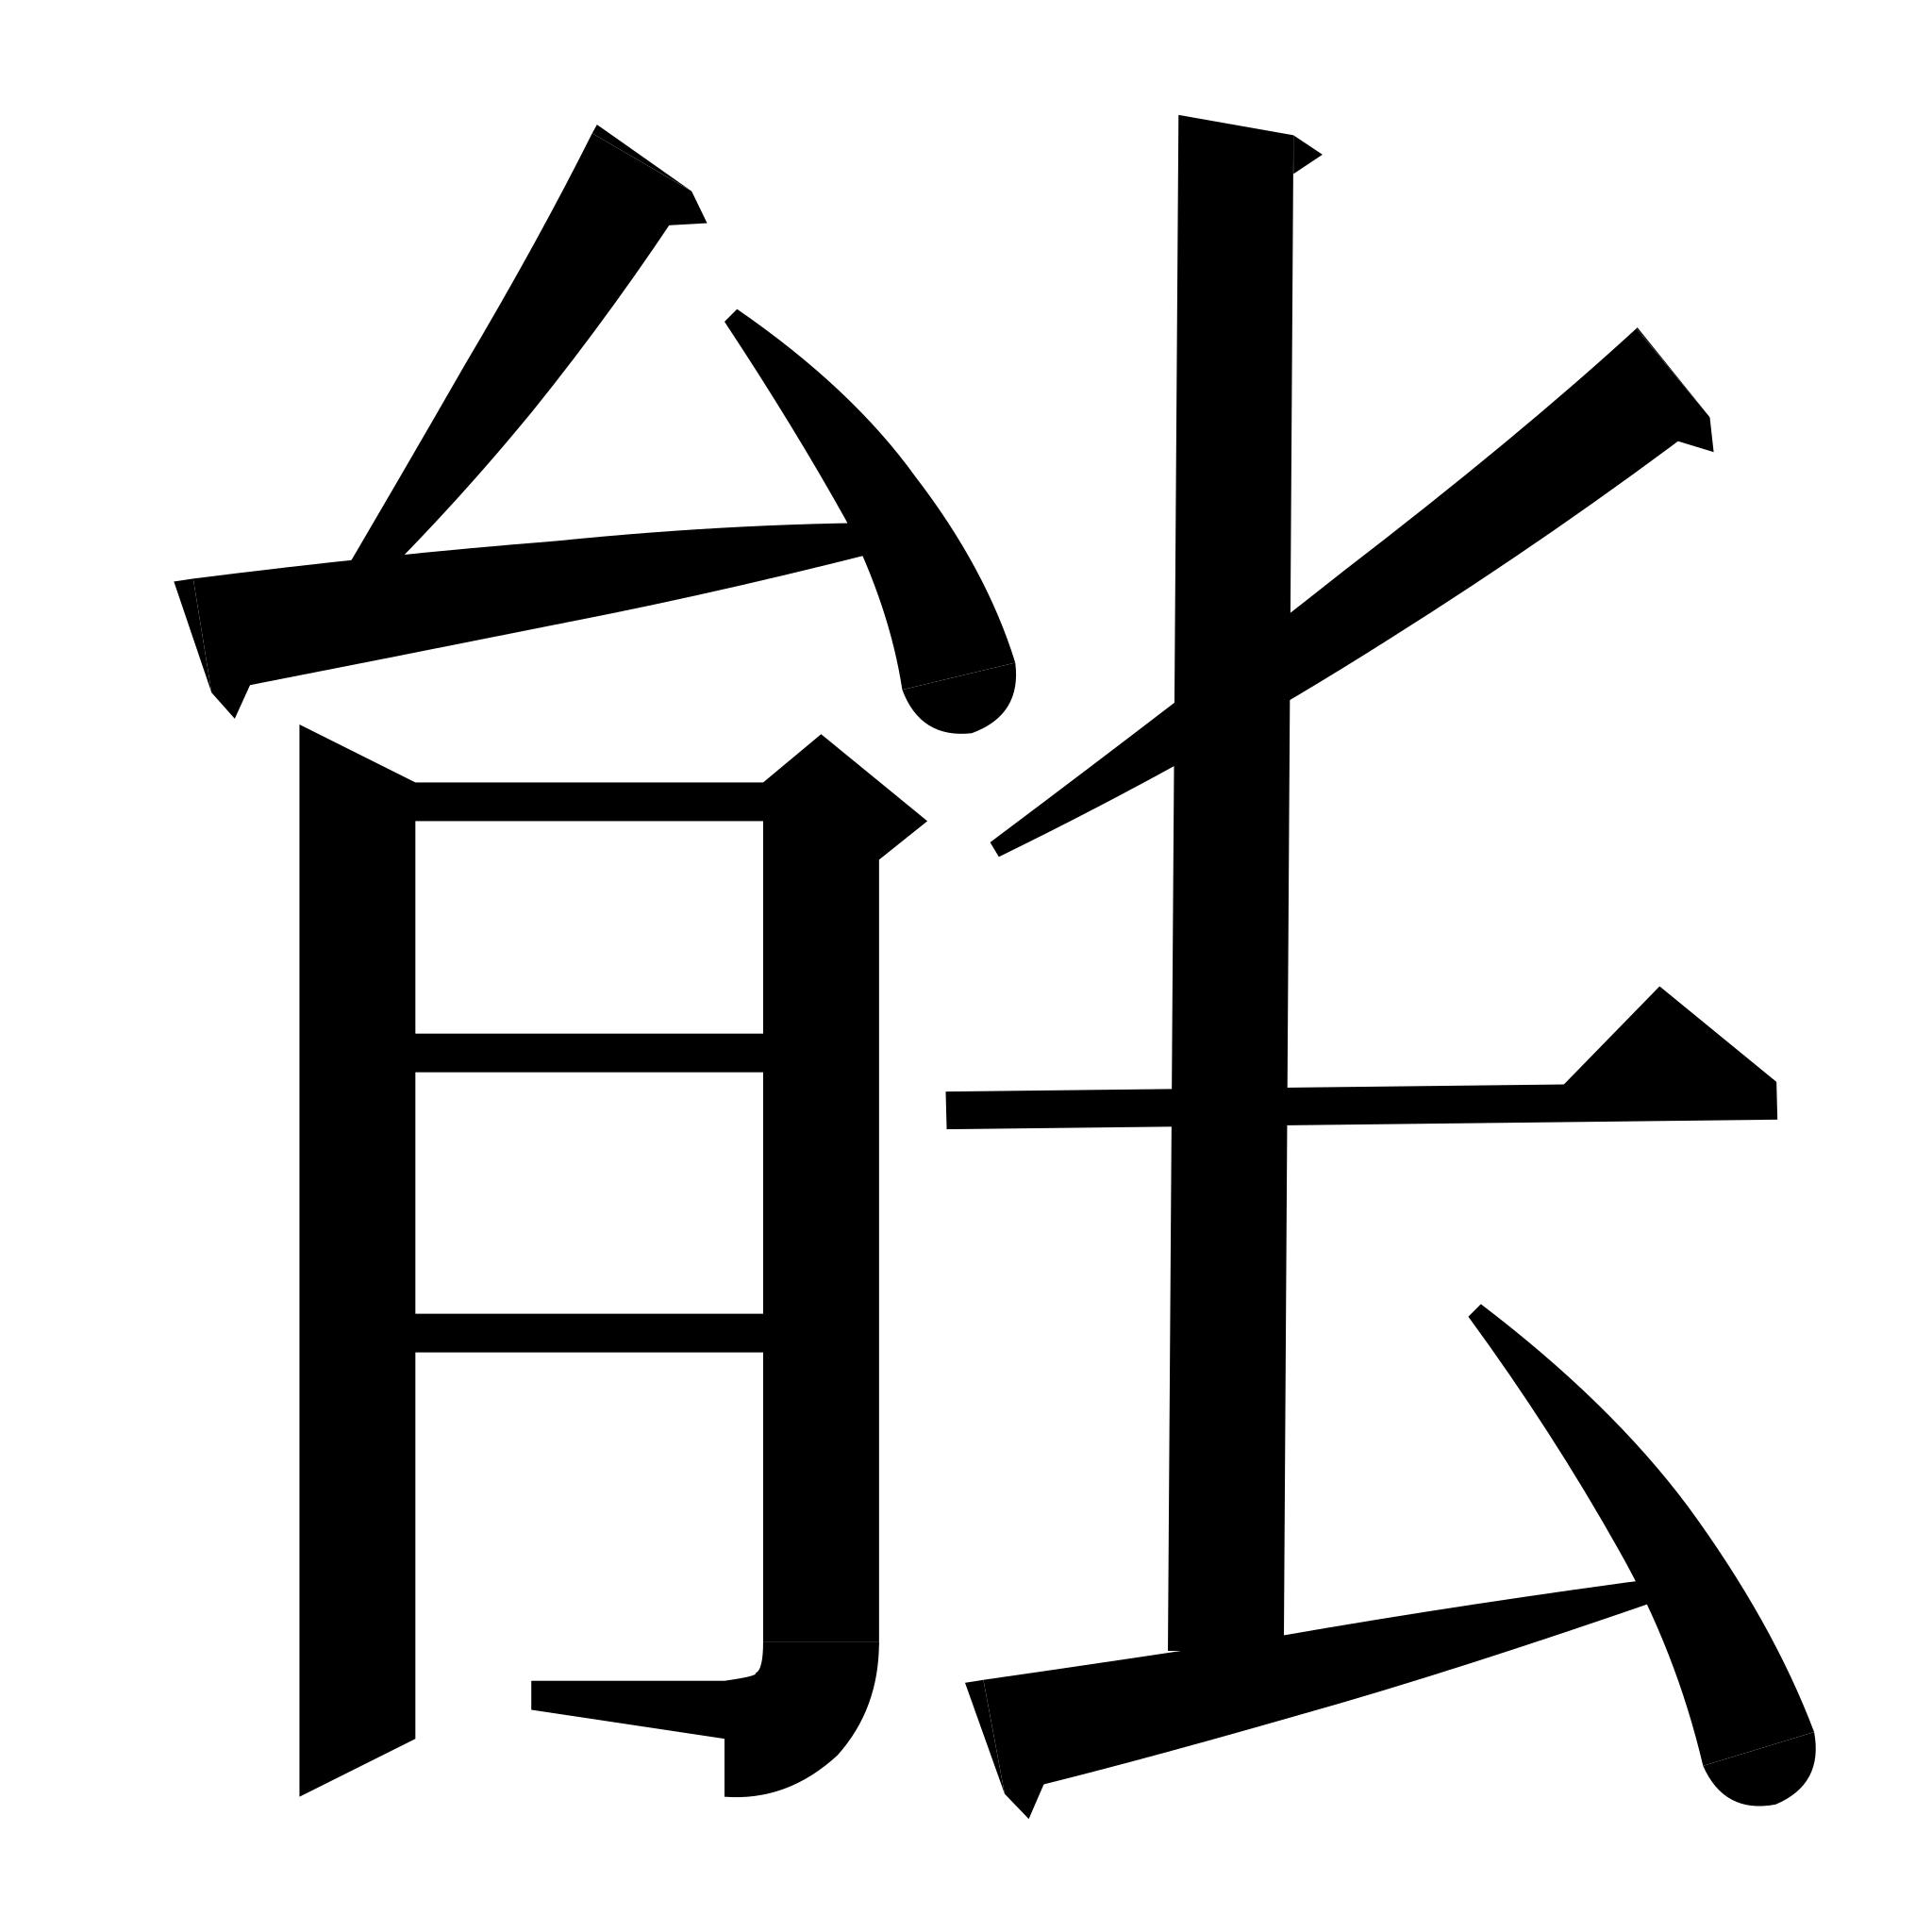 У моря на японском языке. Японские символы. Японские иероглифы. Китайские символы. Кандзи японские.